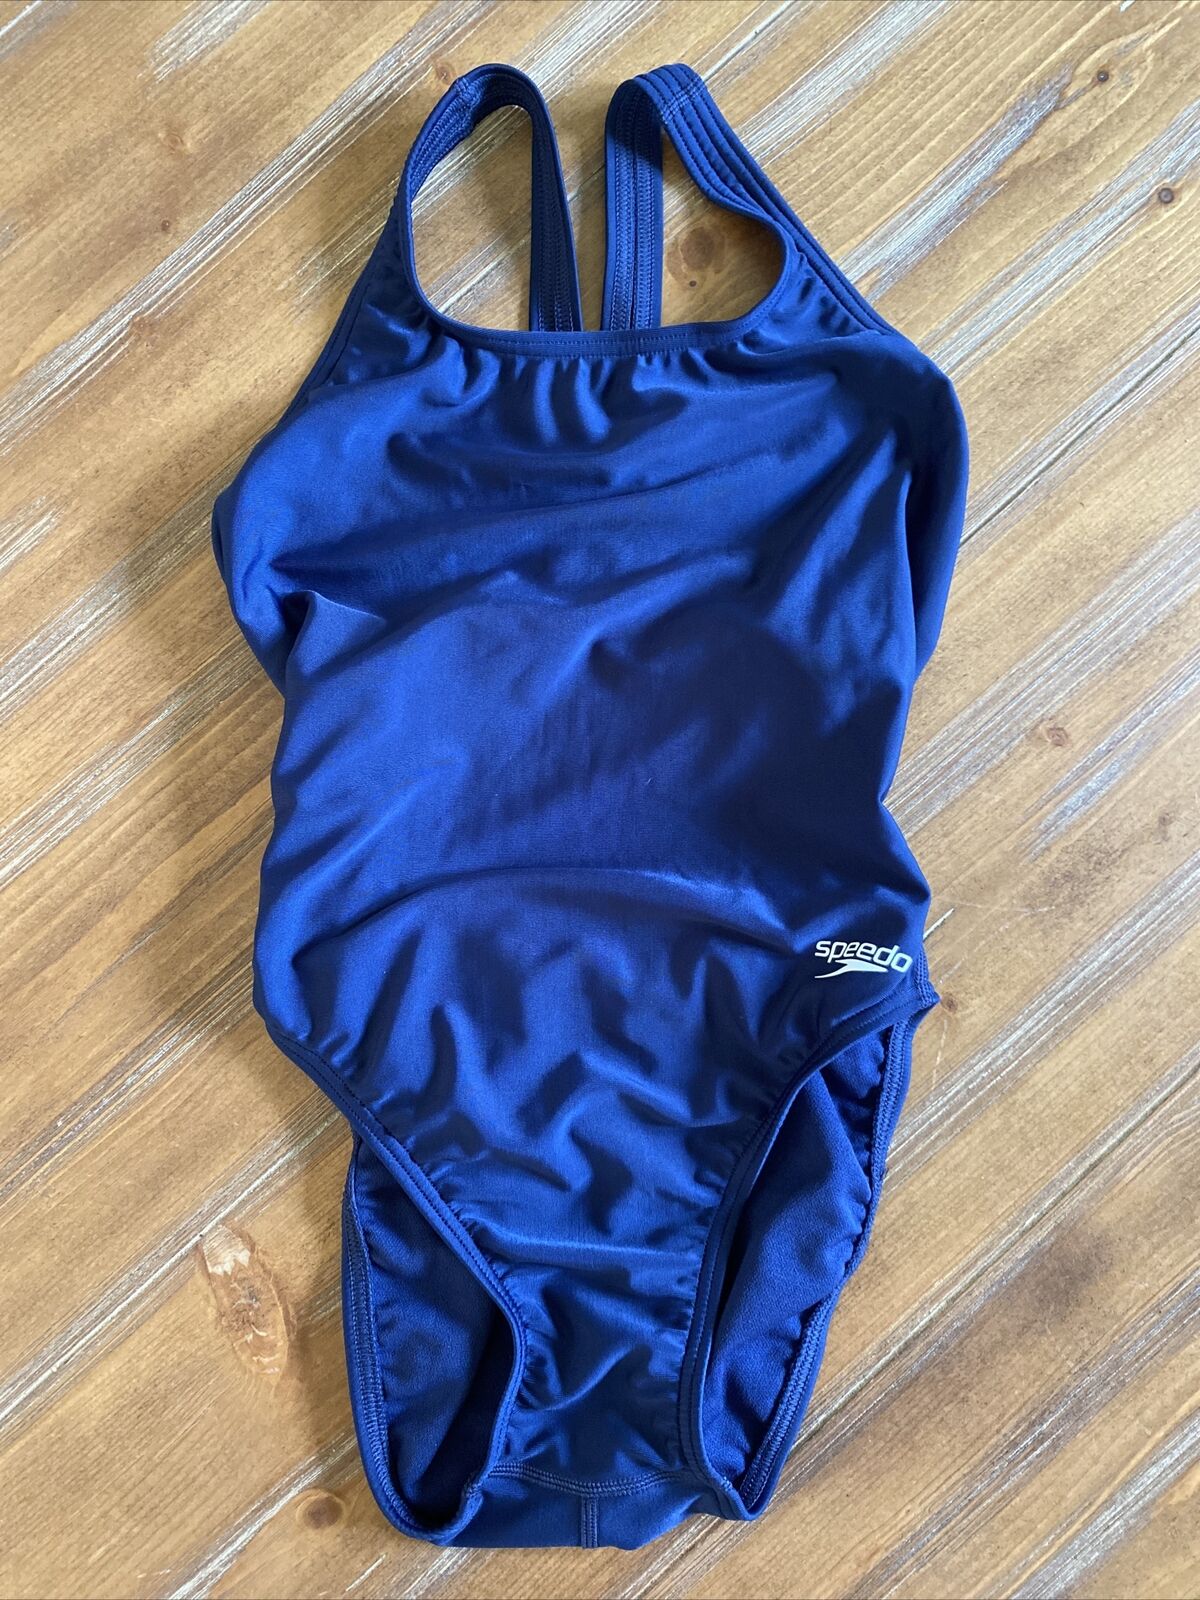 Speedo Pro Lt Navy Blue One Piece Swimsuit Women's Size 30